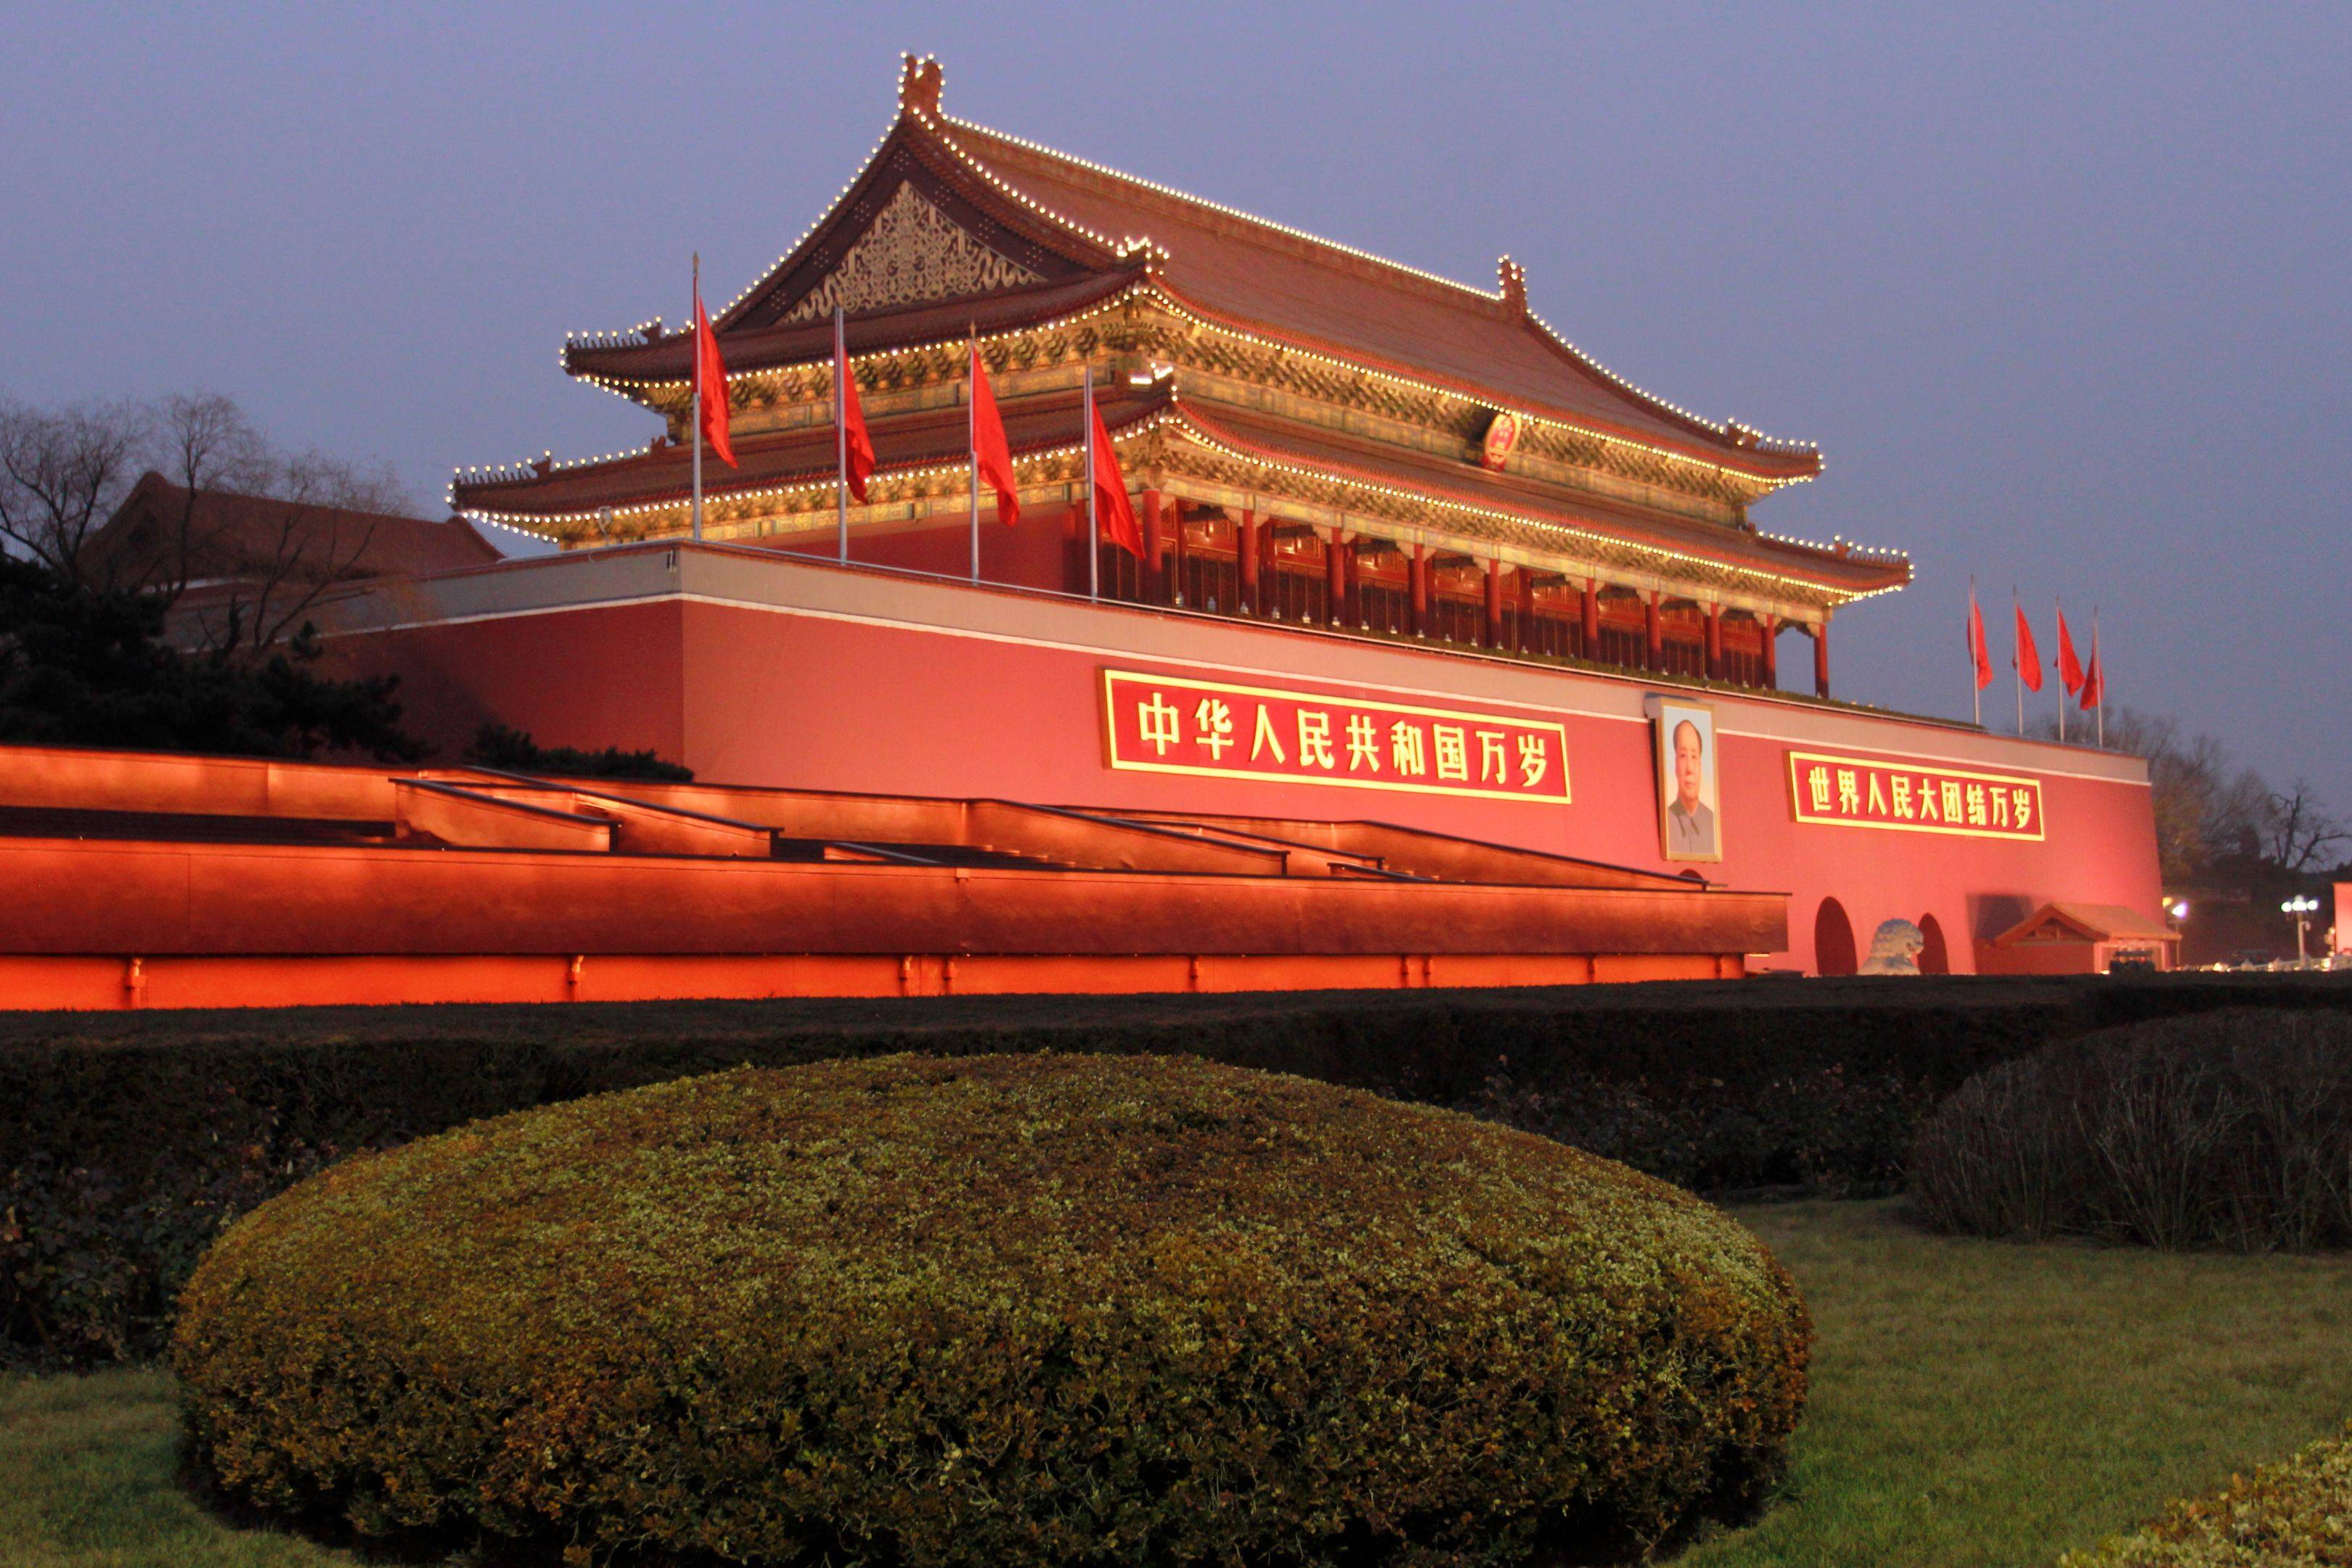 Alla scoperta della Pechino imperiale